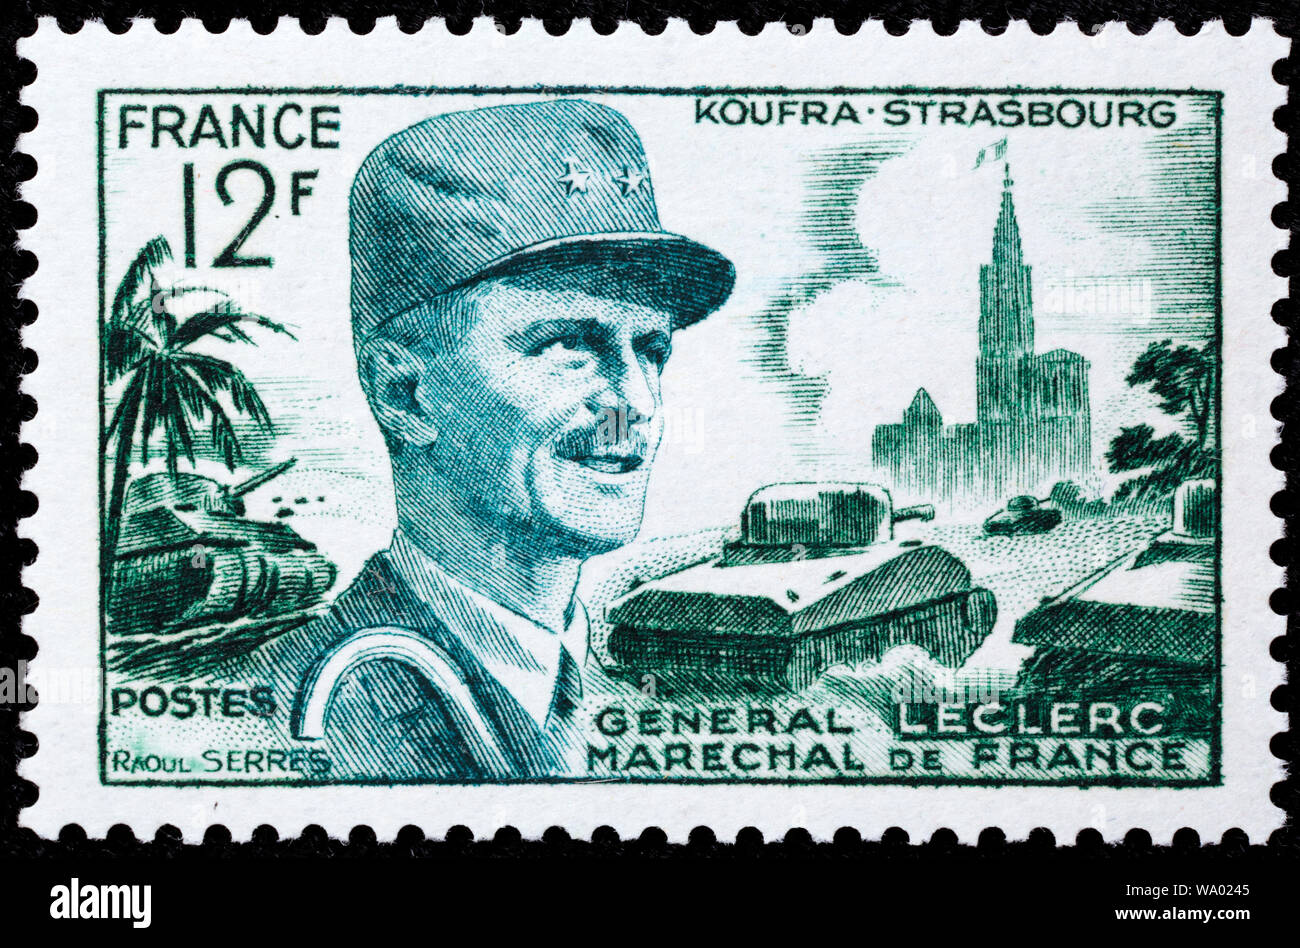 Le général Leclerc, Maréchal de France, Koufra, Strasbourg, timbre-poste, France, 1954 Banque D'Images